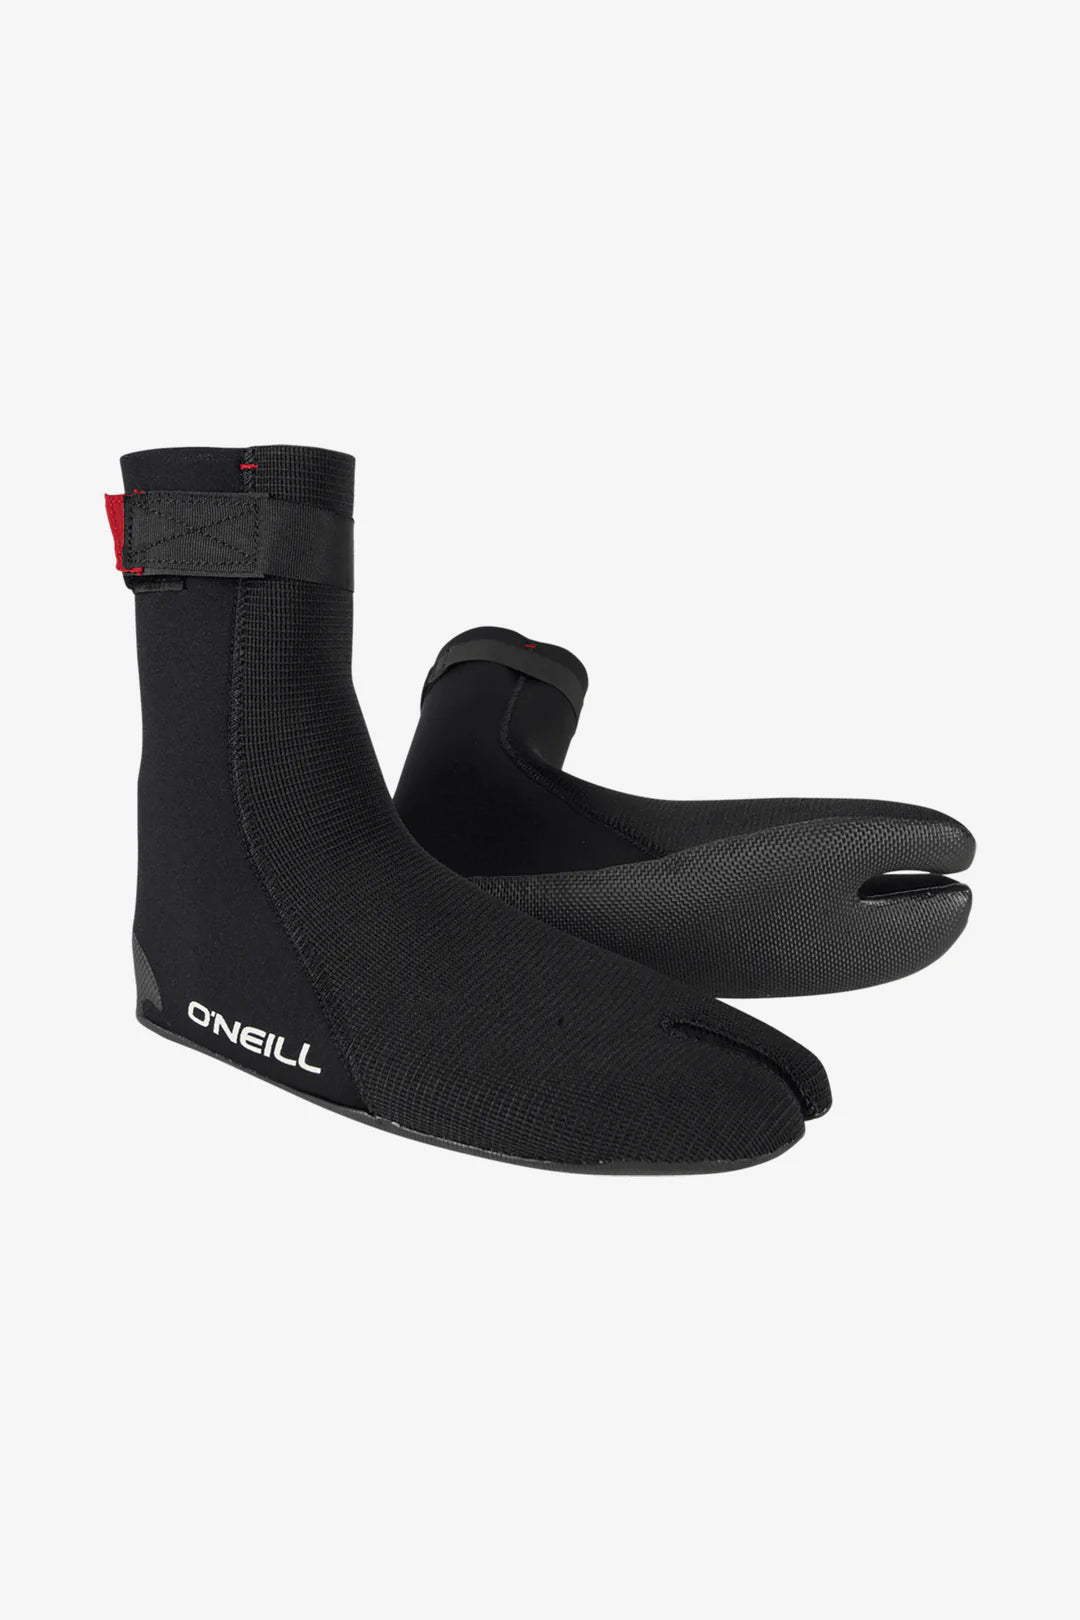 O'Neill Ninja 5/4mm ST Boots